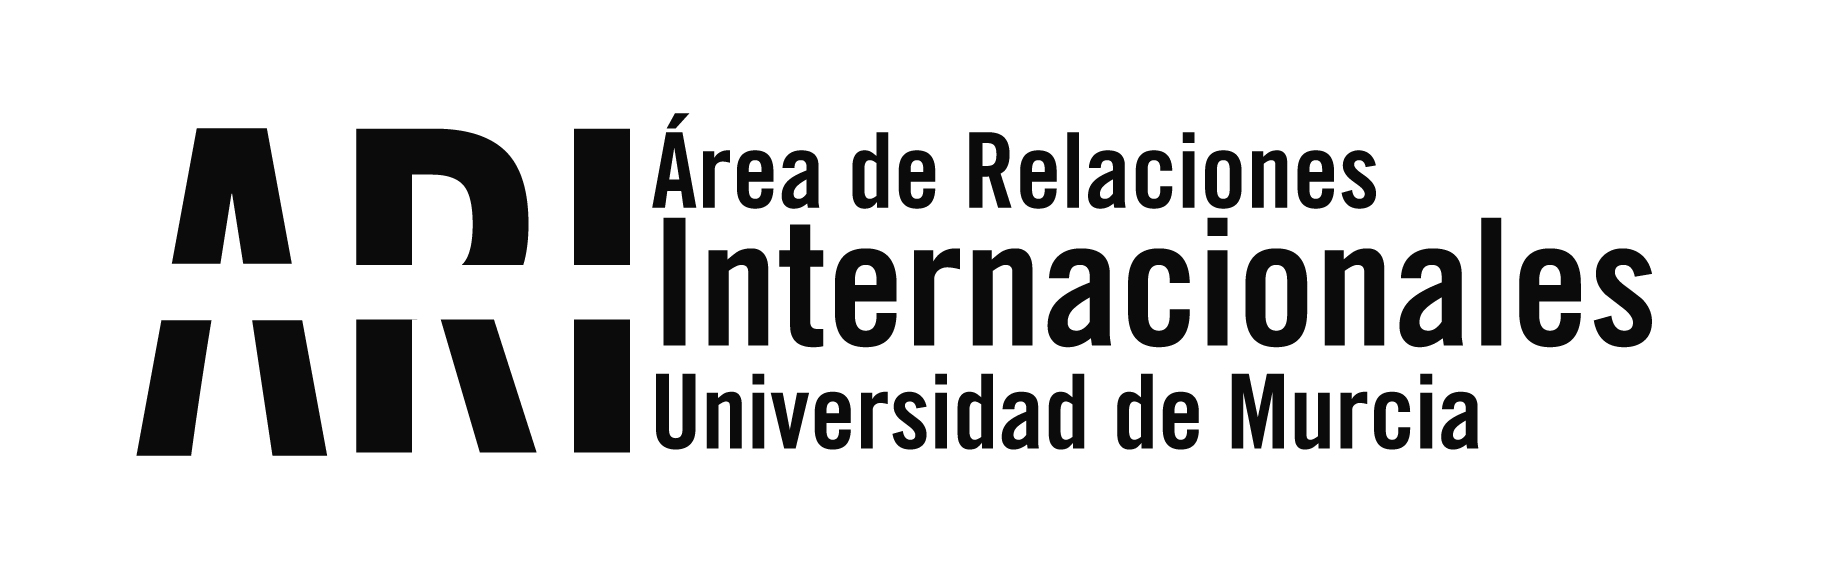 2015 - Eventos - Área de Relaciones Internacionales